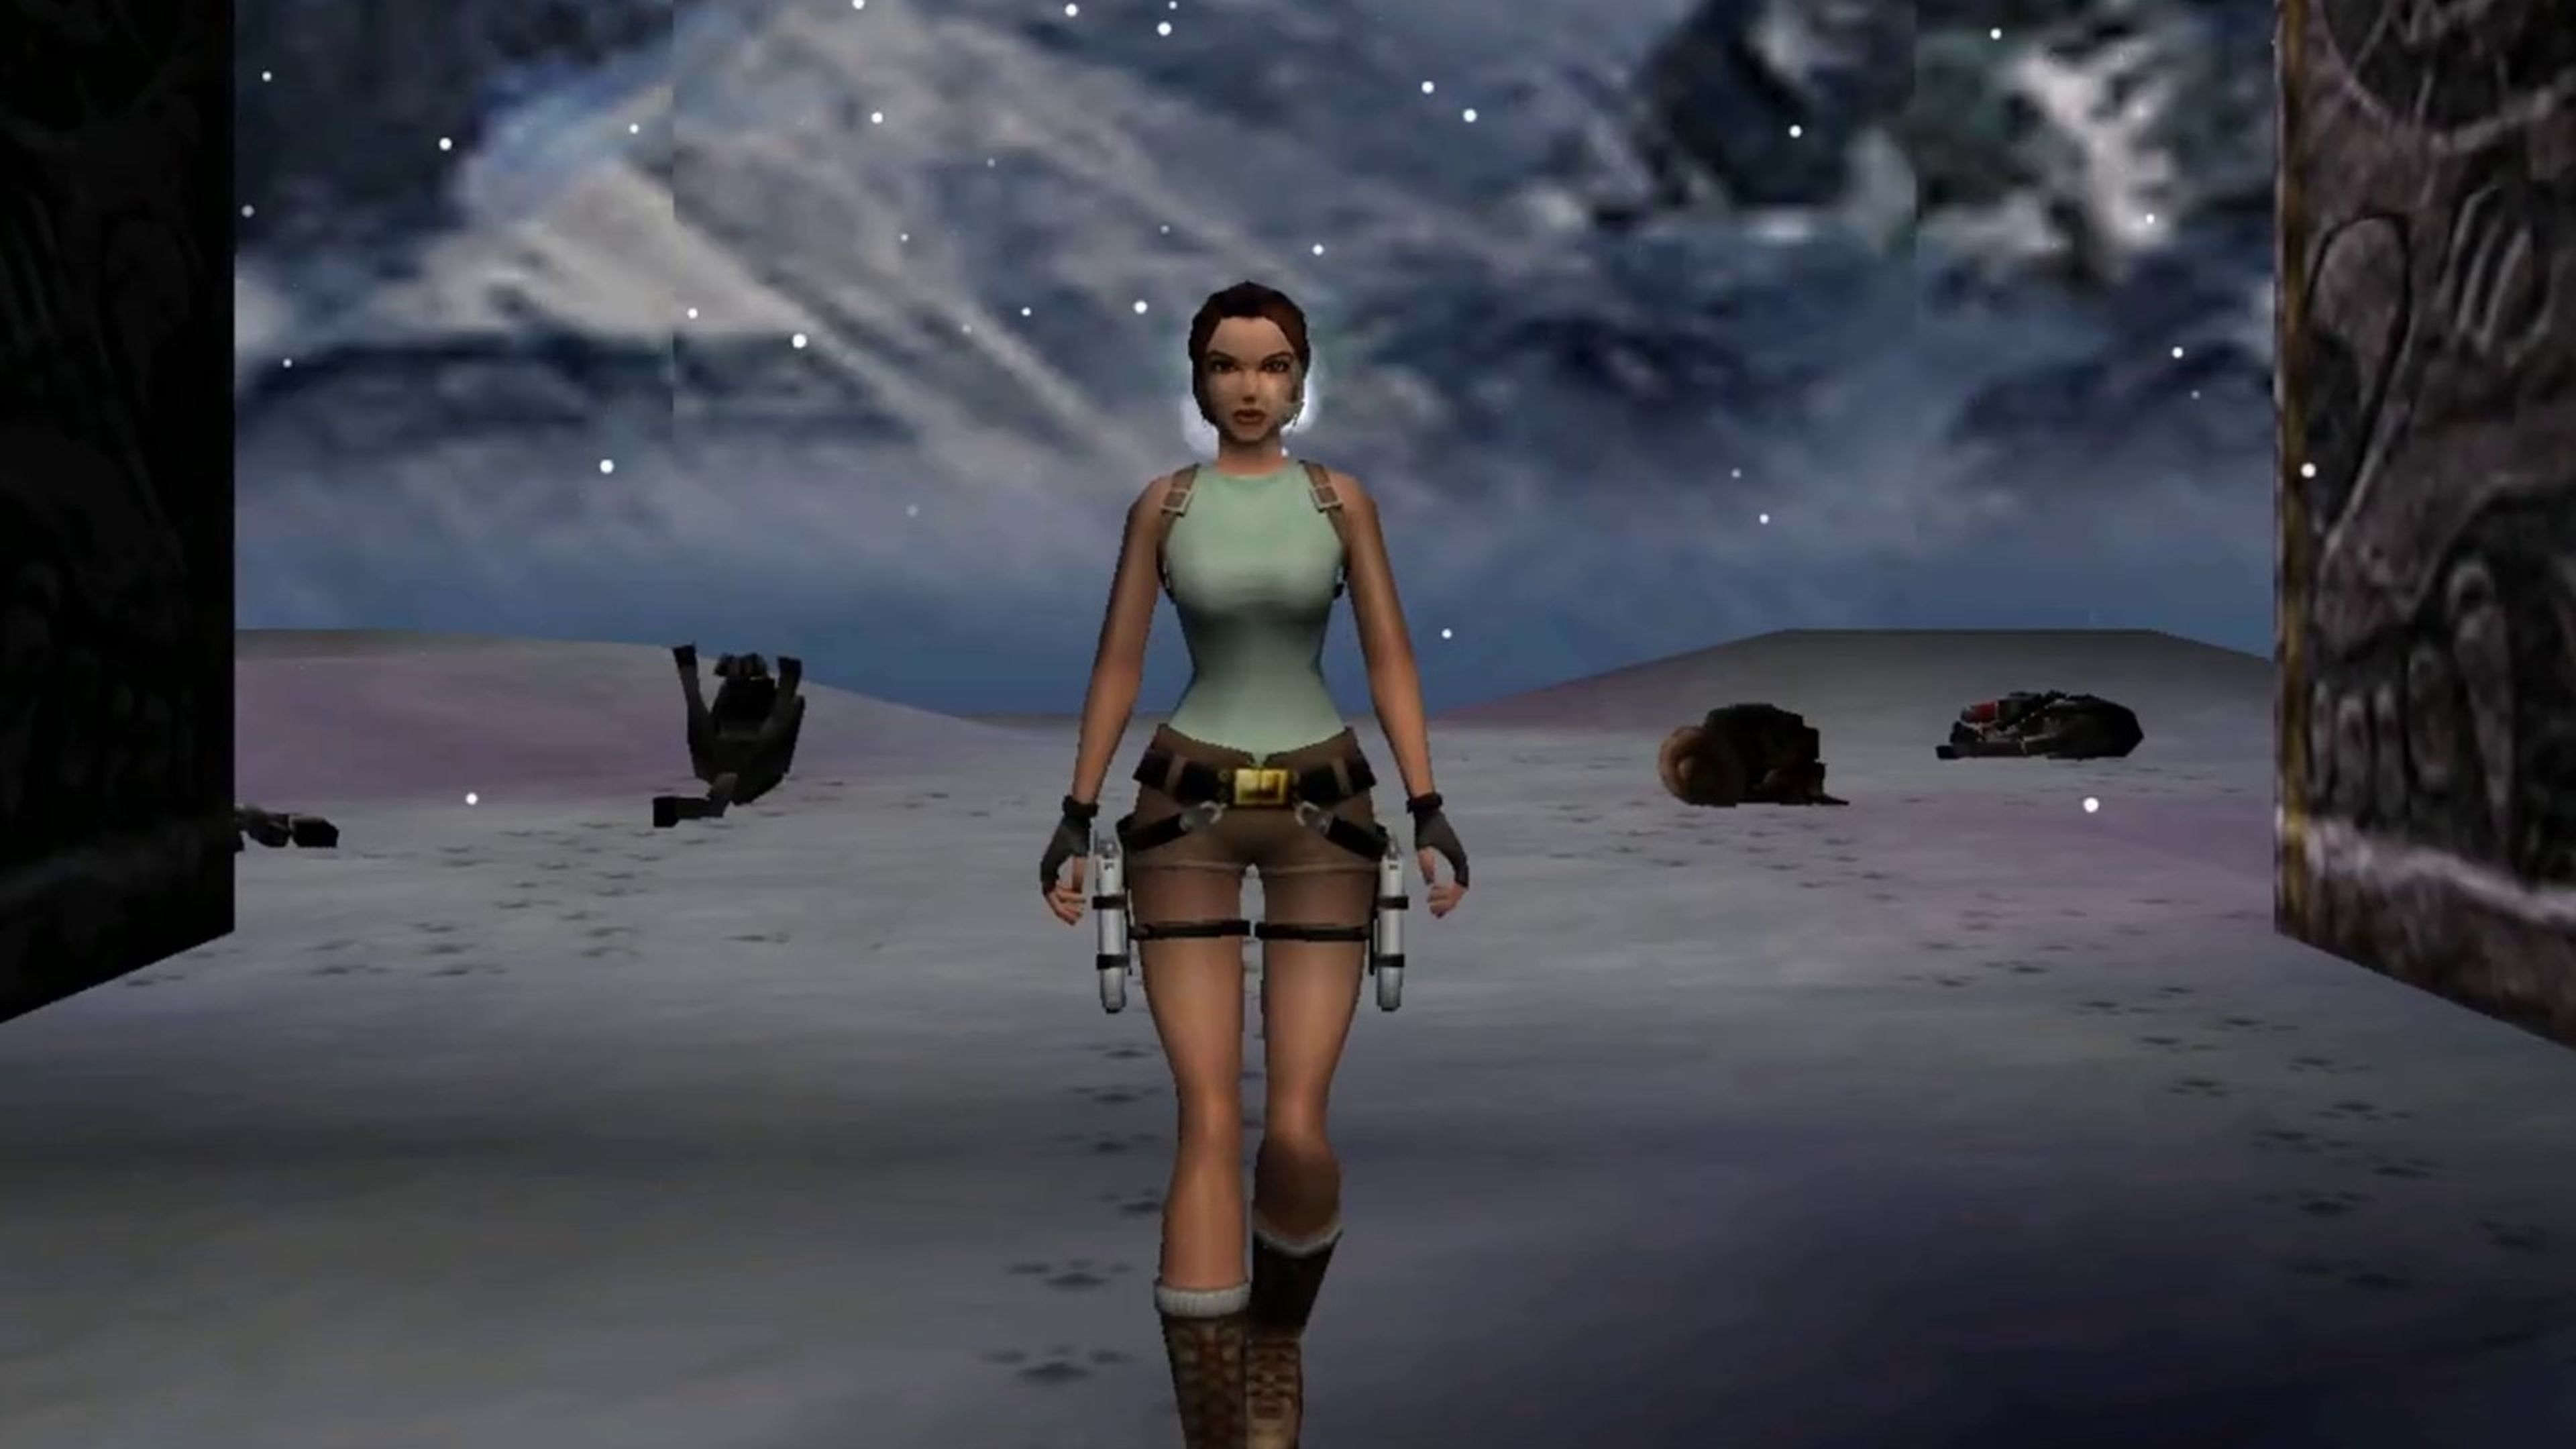 Juega gratis a Tomb Raider Redux, remake fan del primer juego